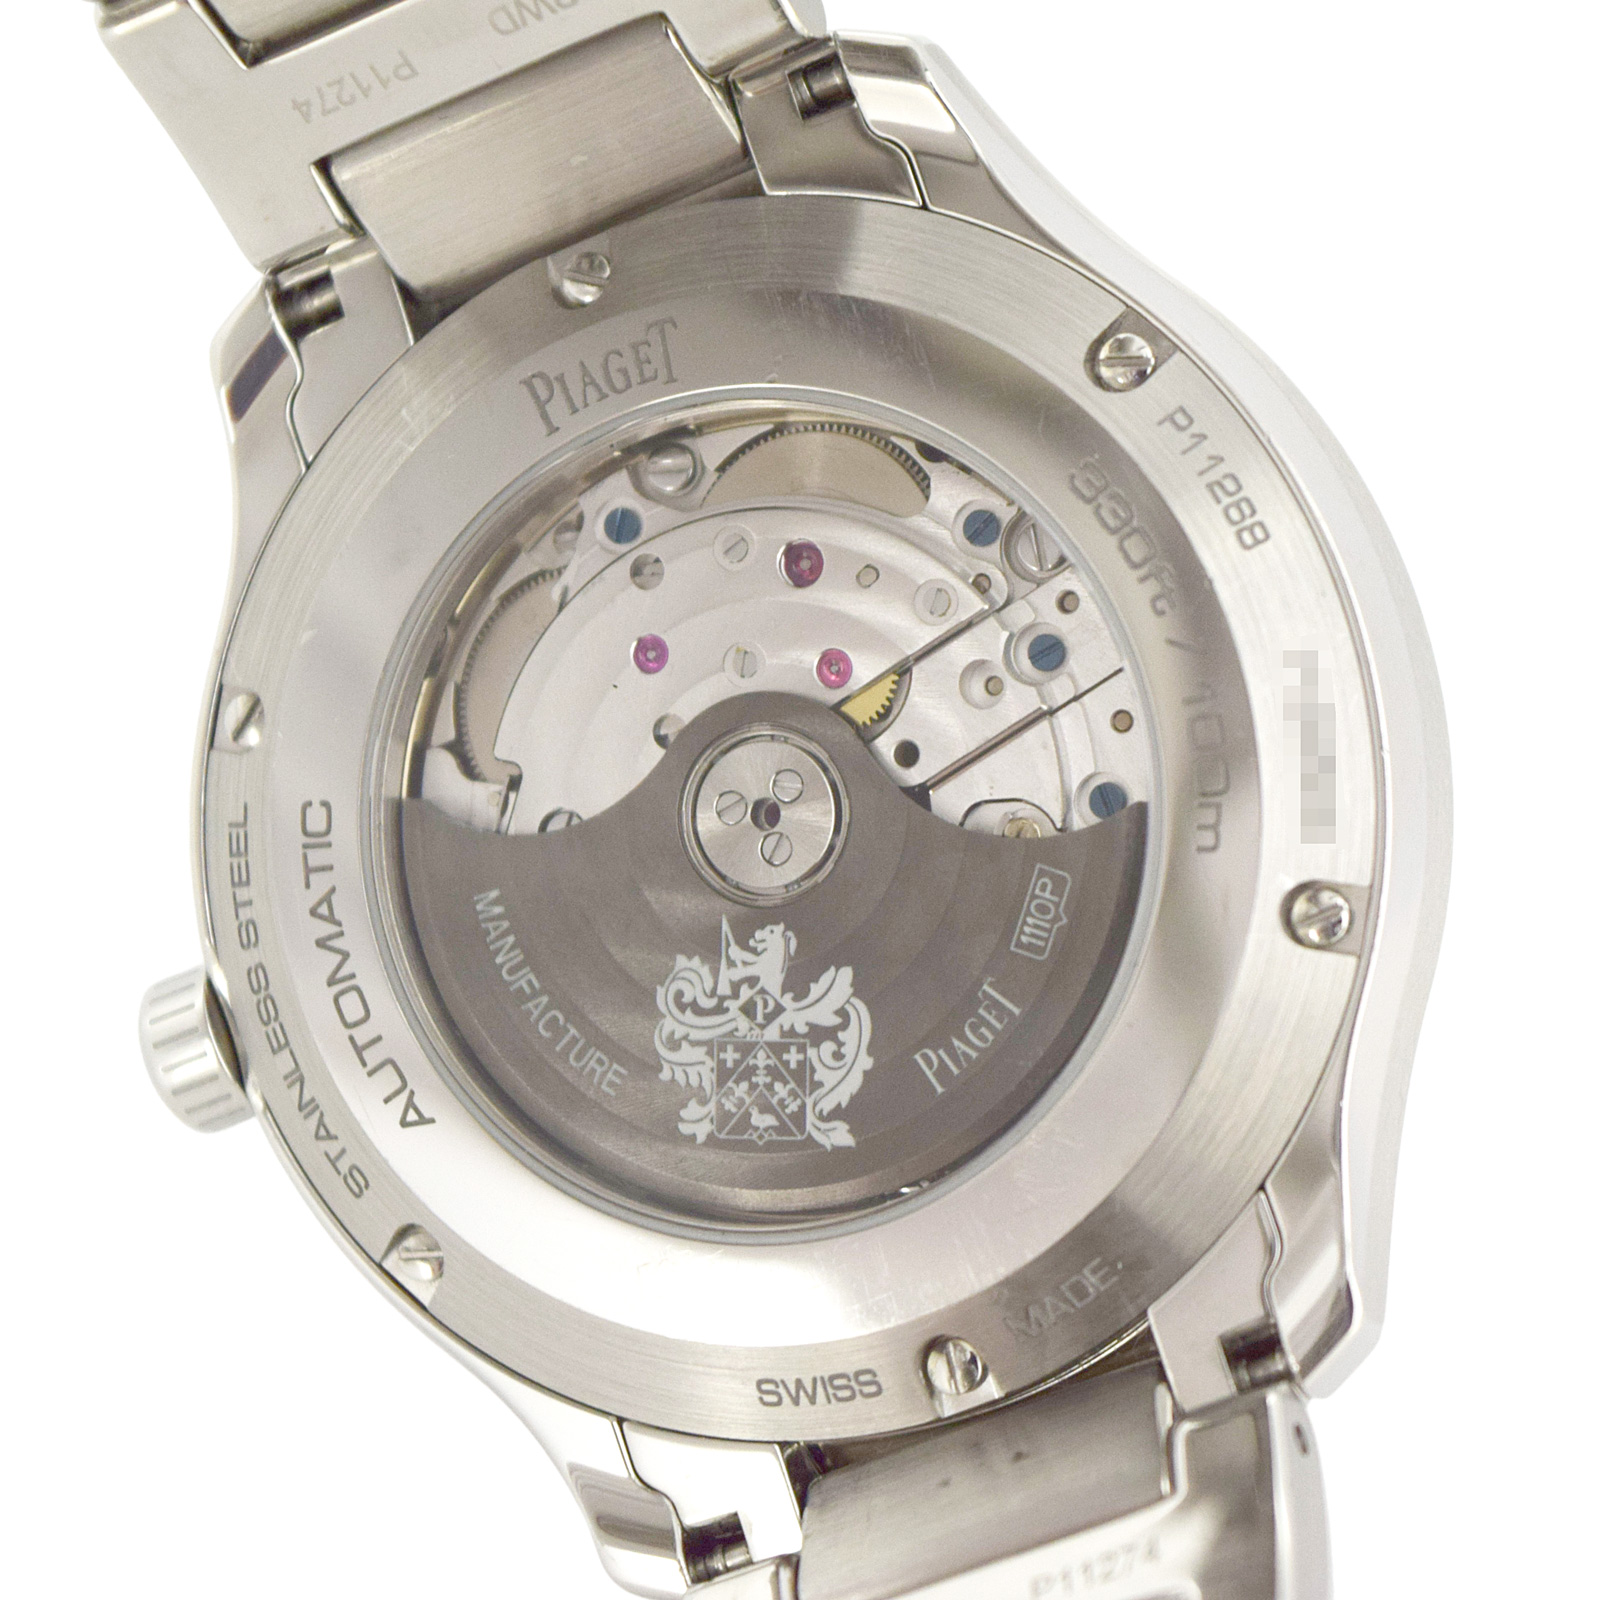 PIAGET ピアジェ  ポロ S  P11268  グレー  メンズ 腕時計